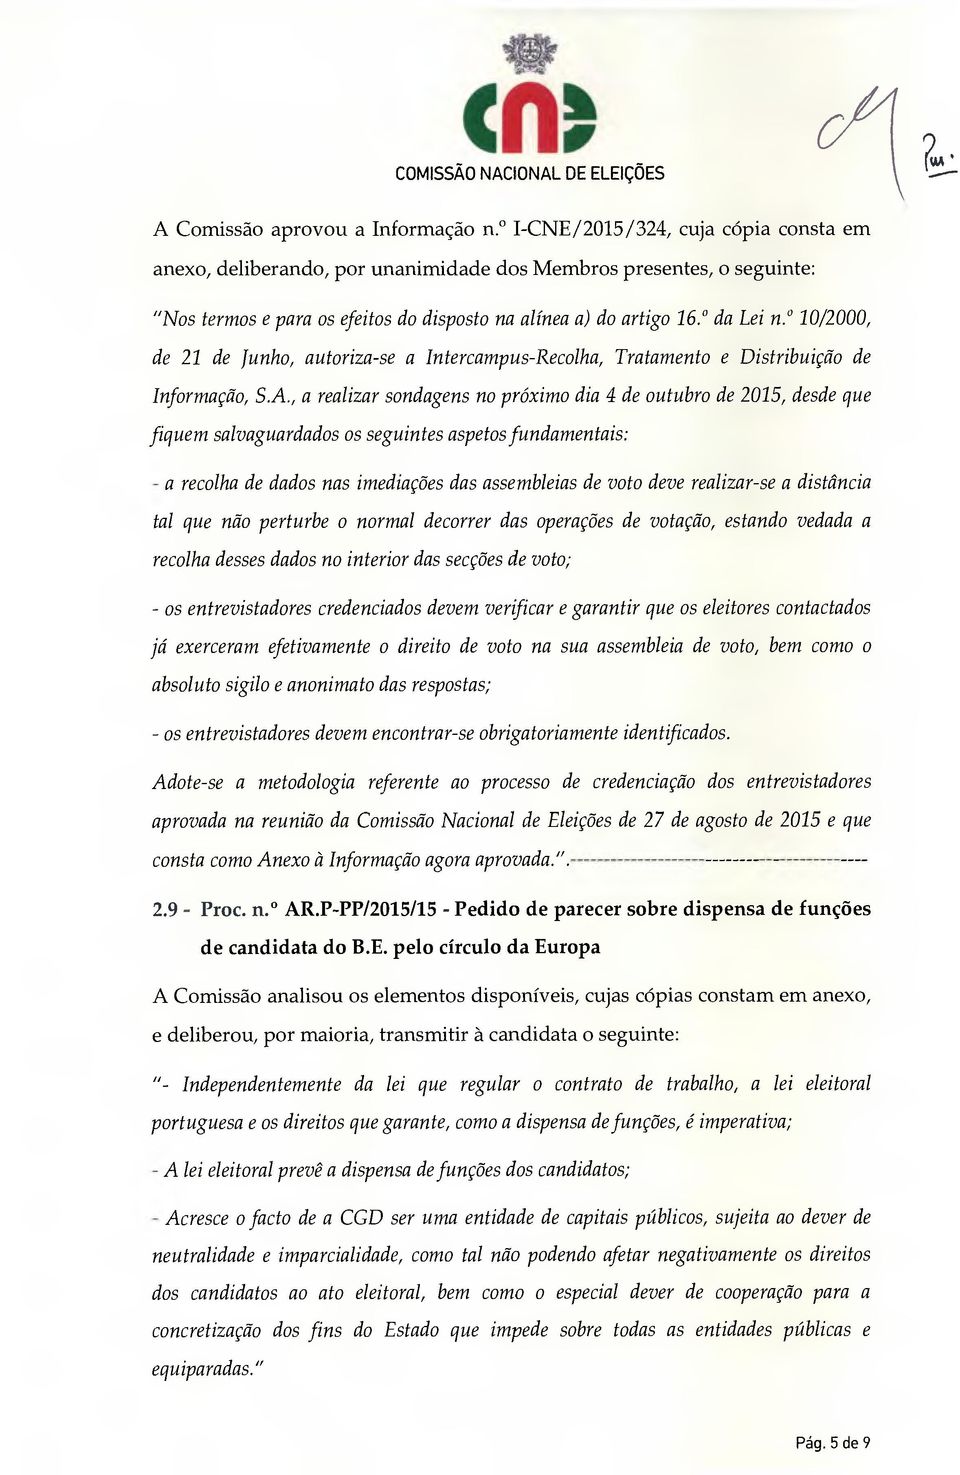 10/2000, de 21 de Junho, autoriza-se a Intercampus-Recolha, Tratamento e Distribuição de Informação, S.A.